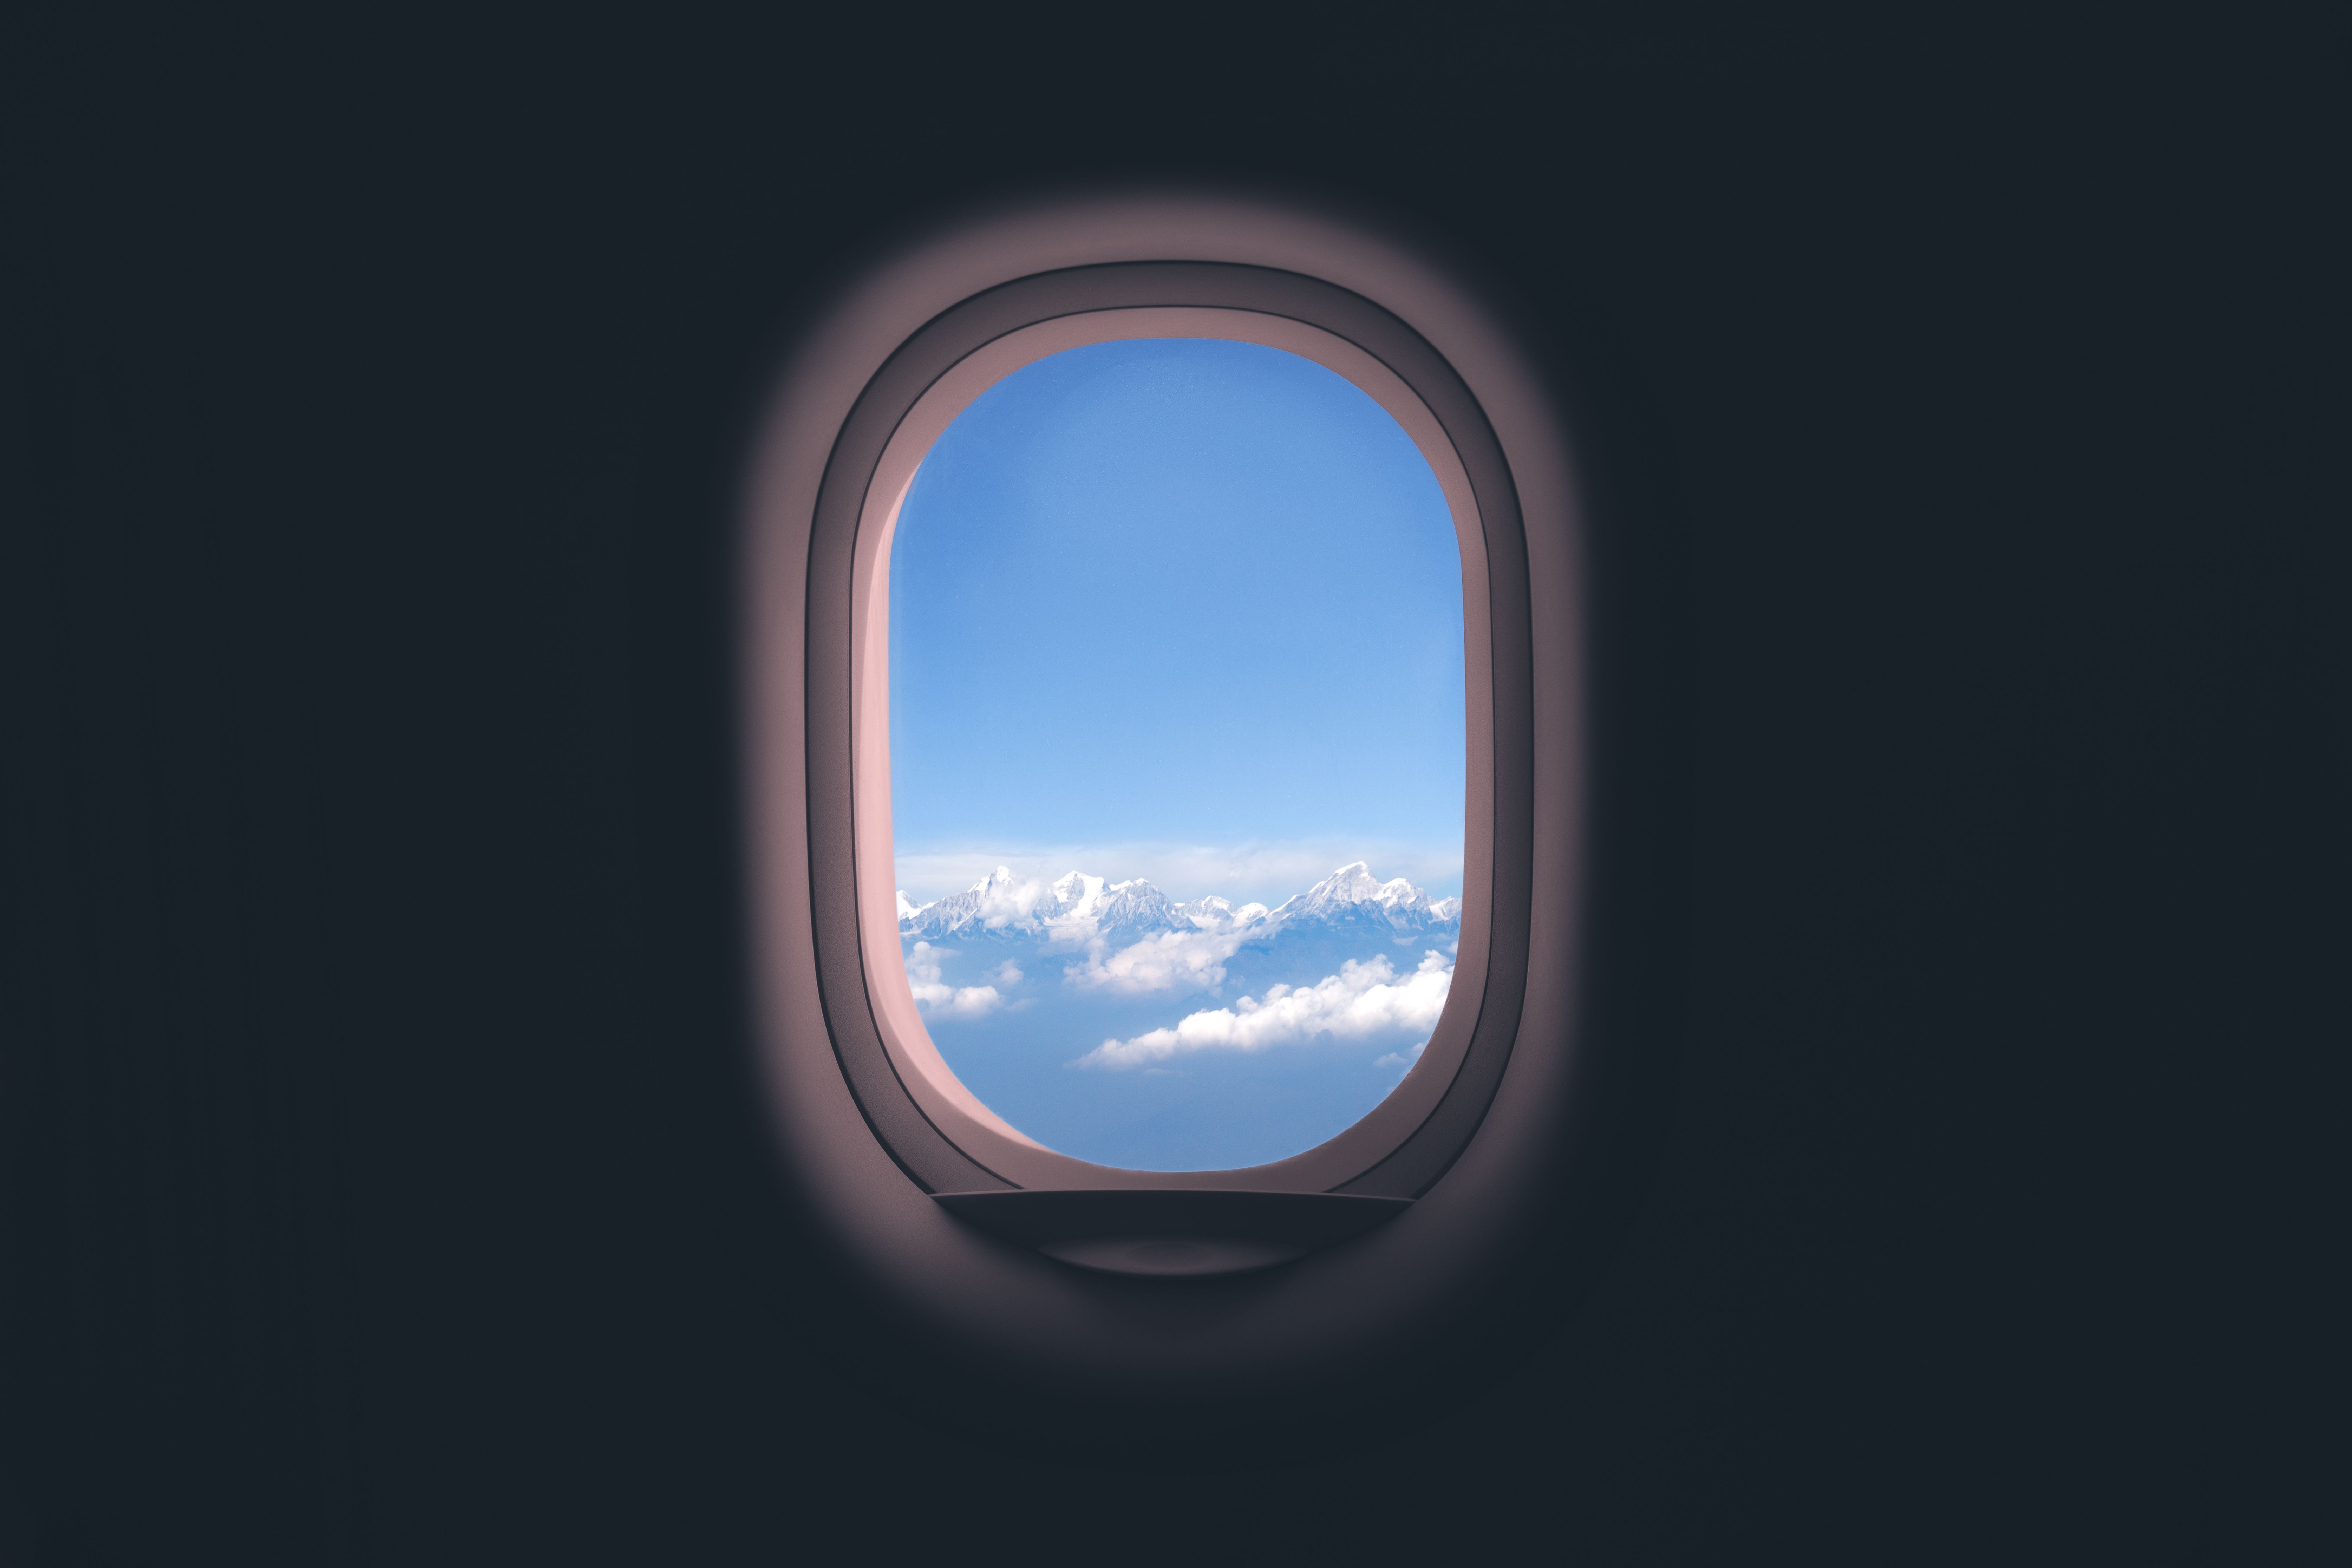 An aircraft window